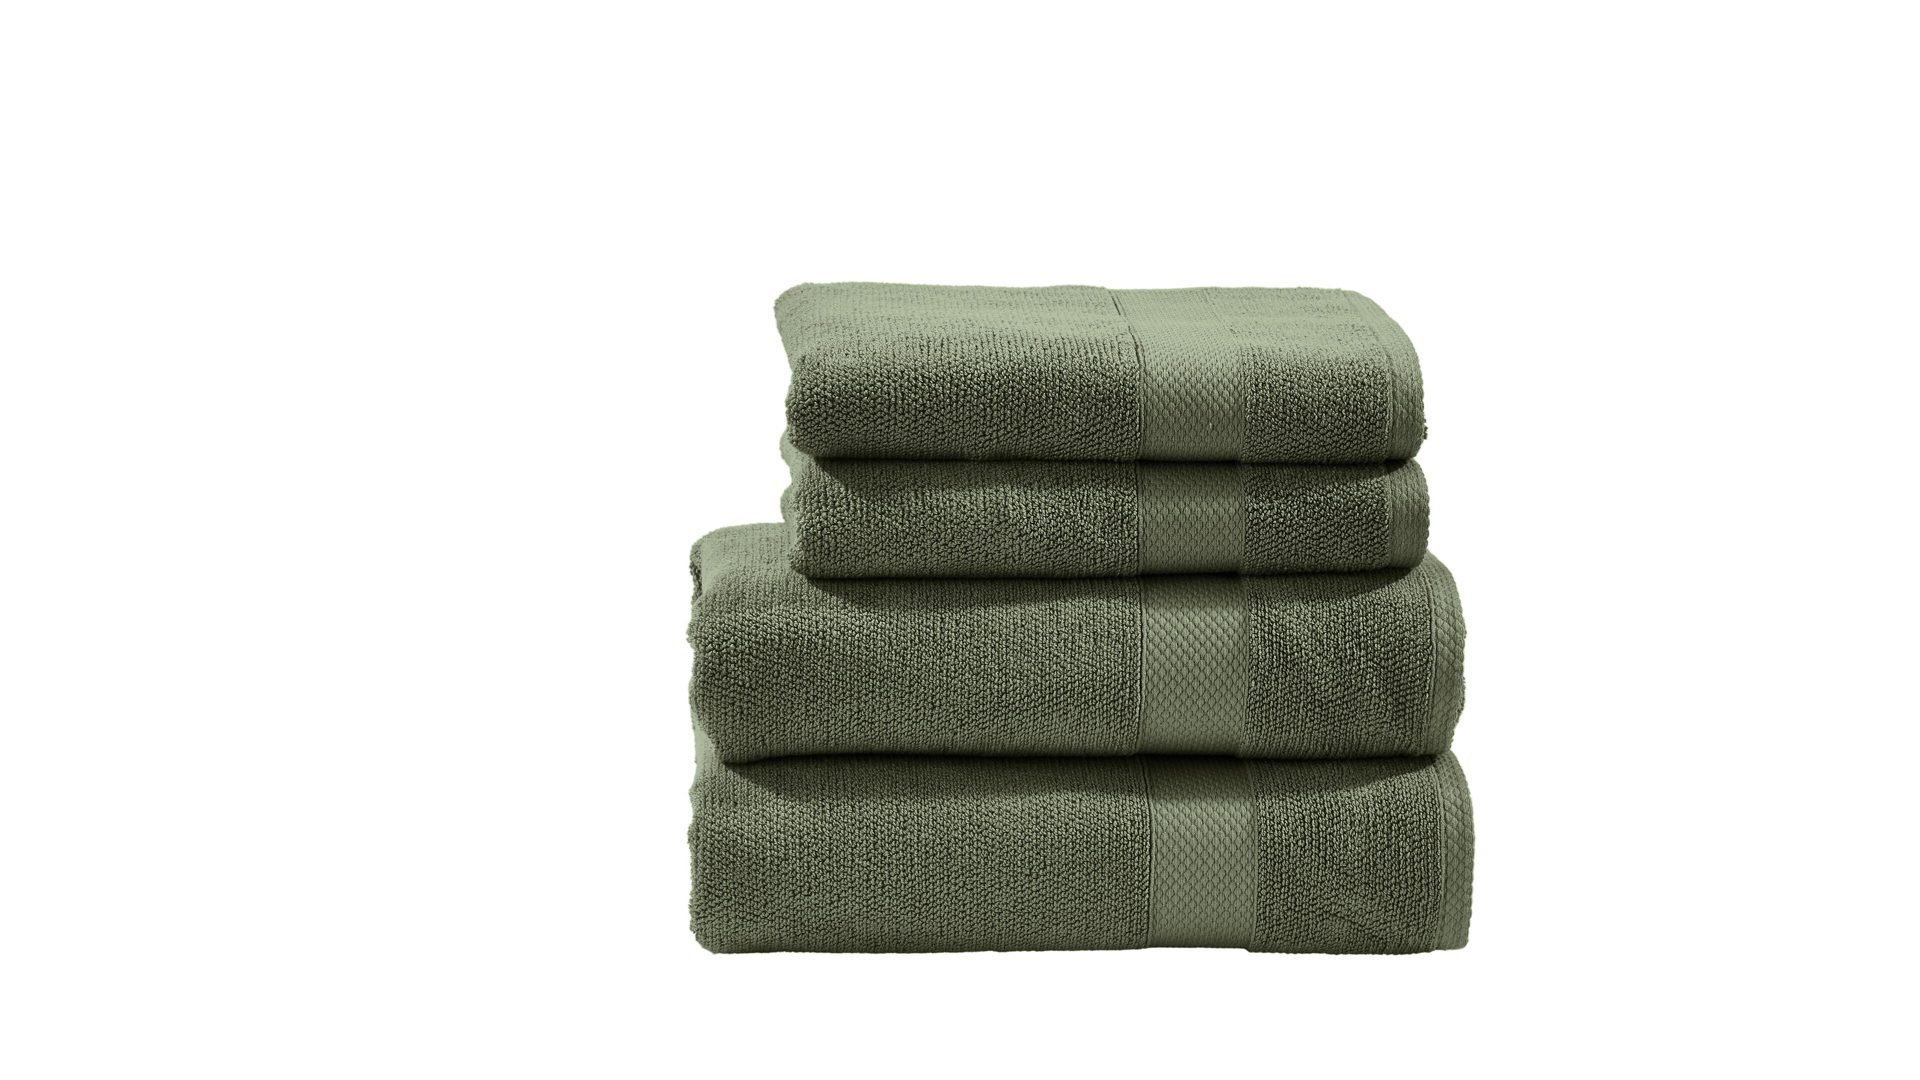 Handtuch-Set Done® by karabel home company aus Stoff in Grün DONE® Handtuch-Set Deluxe khakifarbene Baumwolle – vierteilig